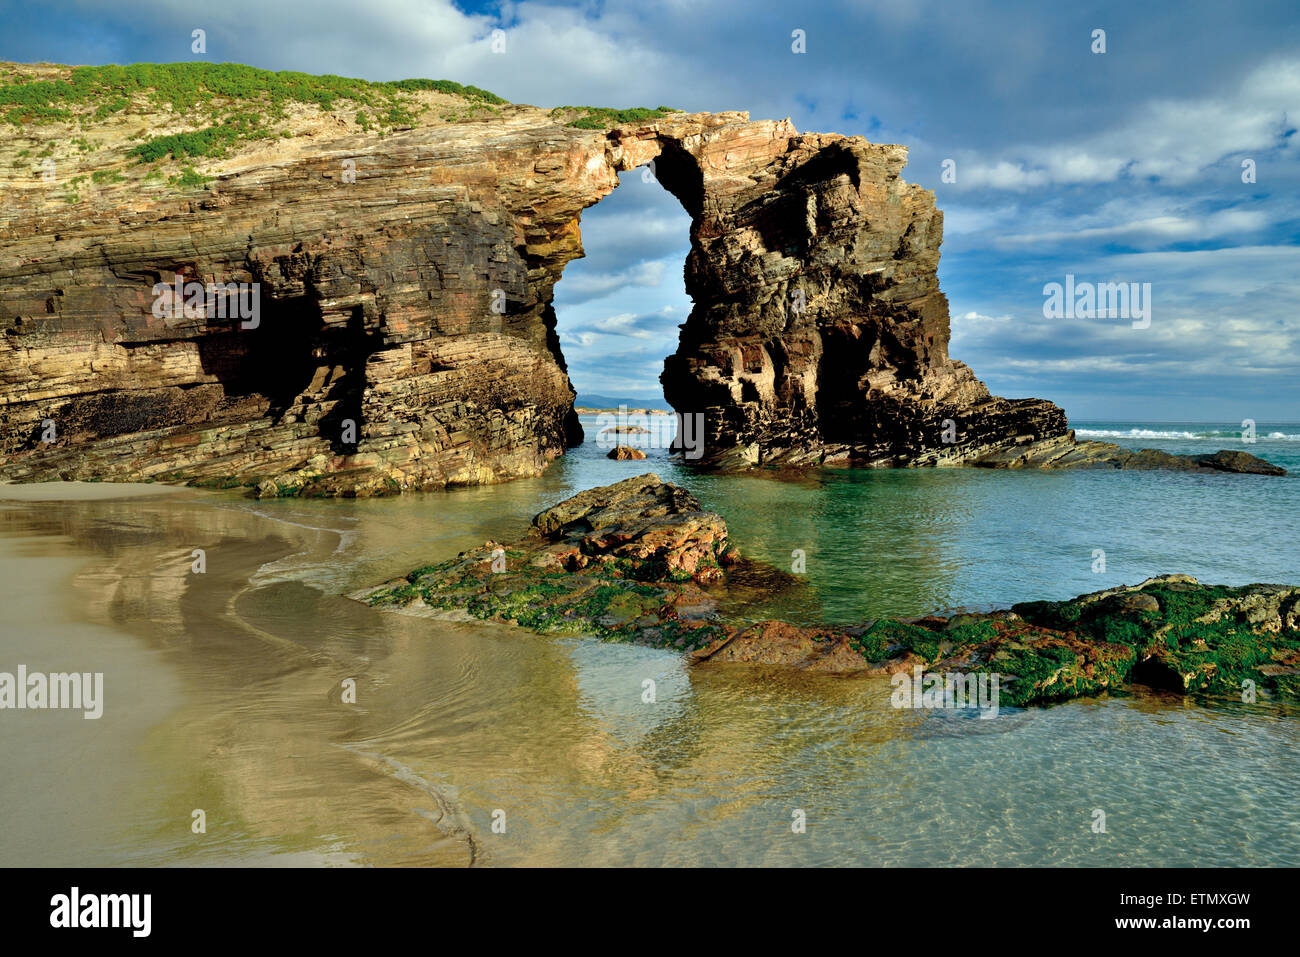 L'Espagne, la Galice : Rock arc à plage de Praia comme Catedrais Banque D'Images